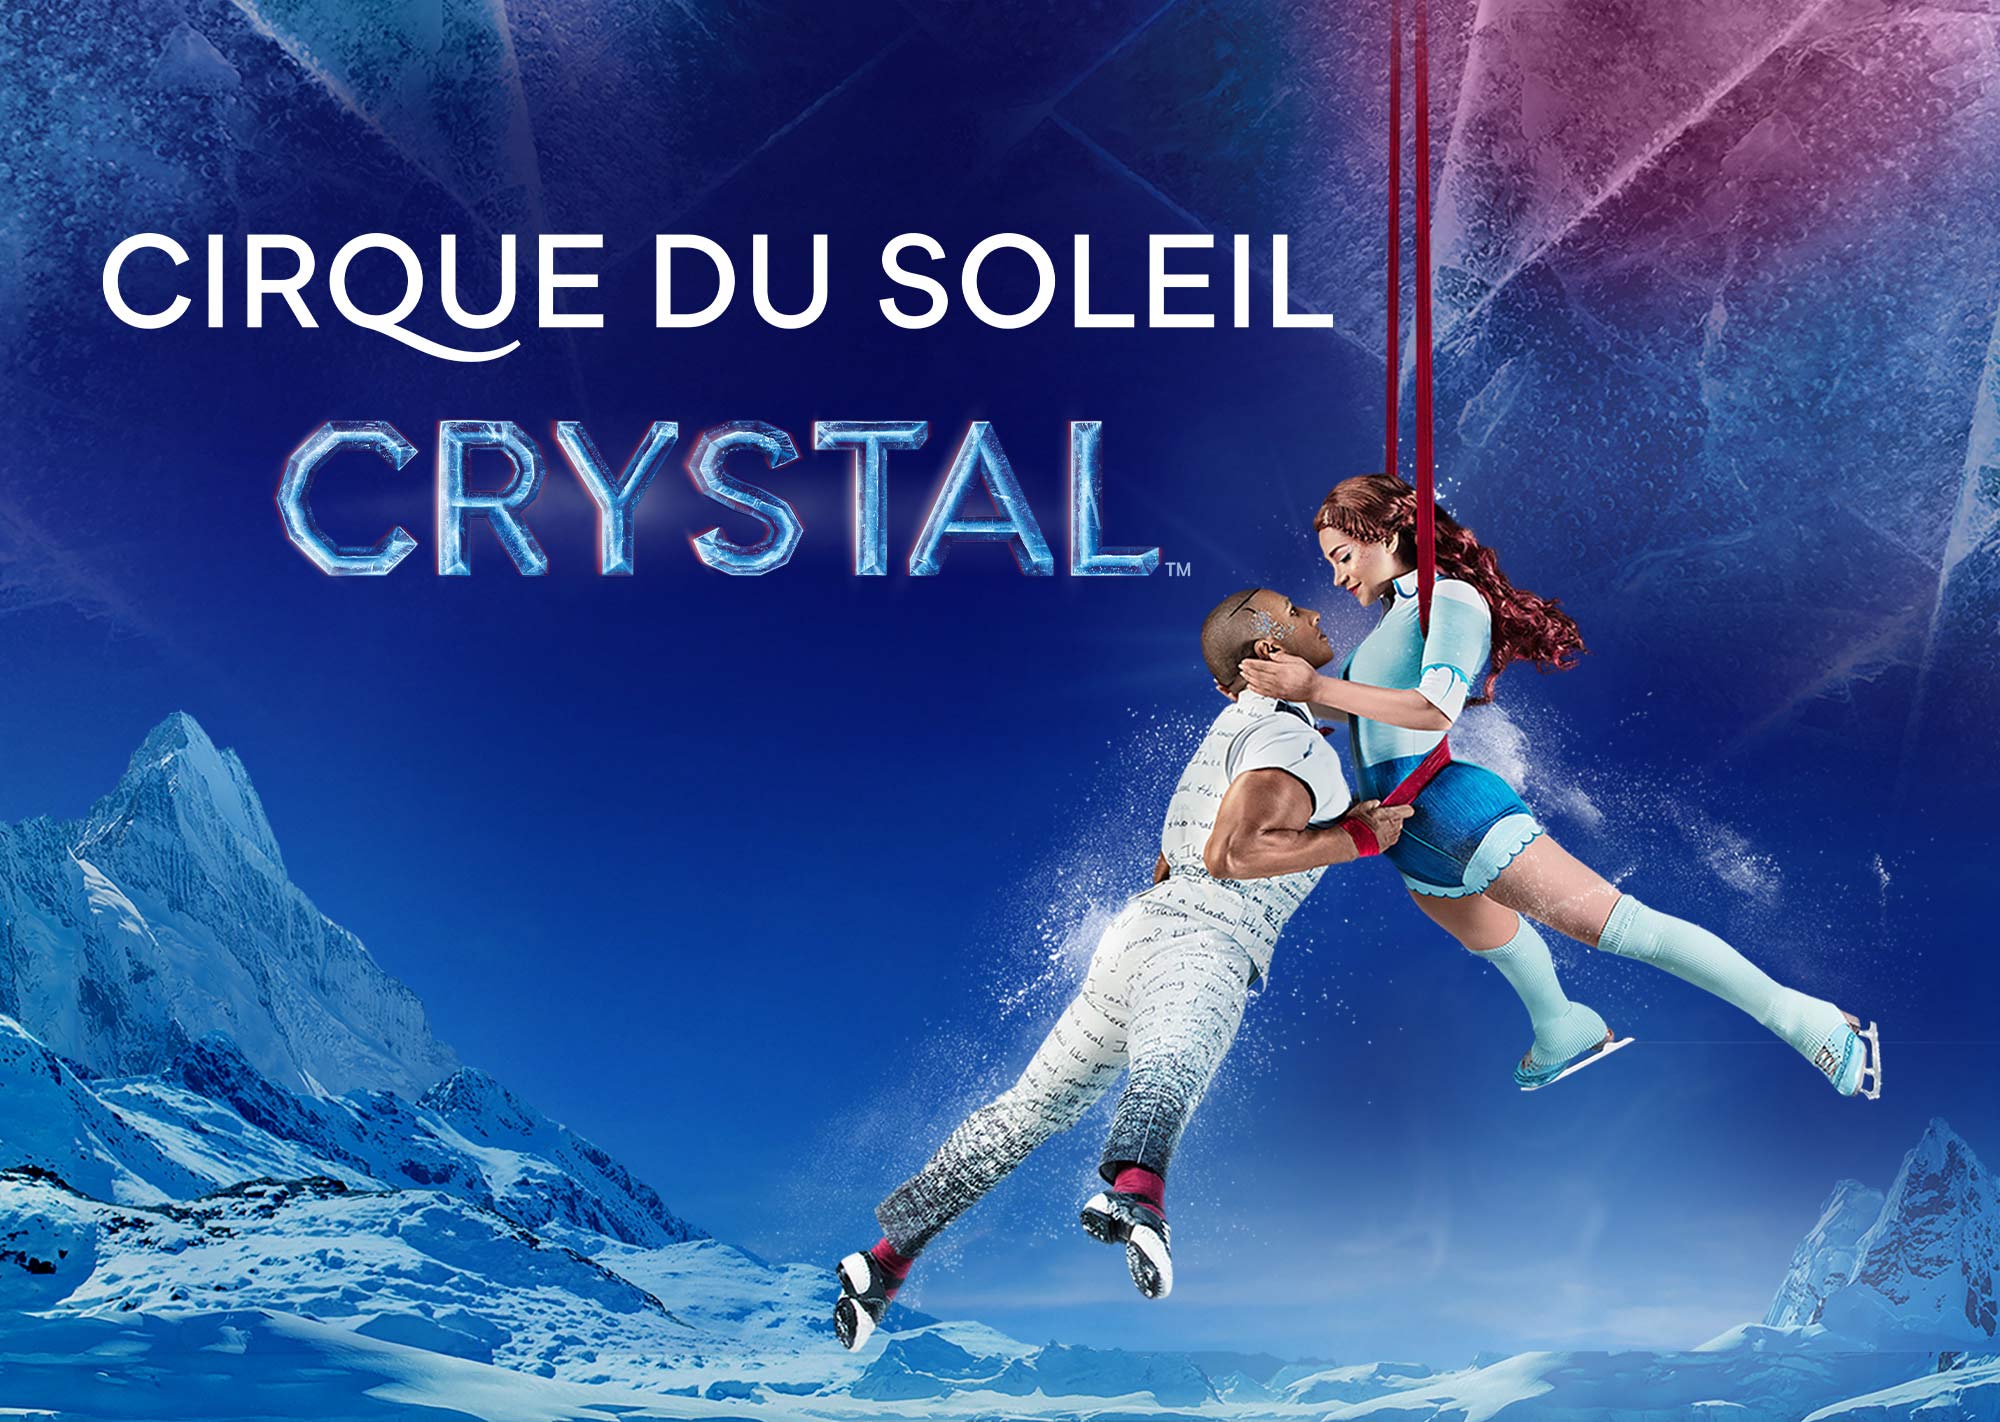 São Paulo - Cirque du Soleil Crystal